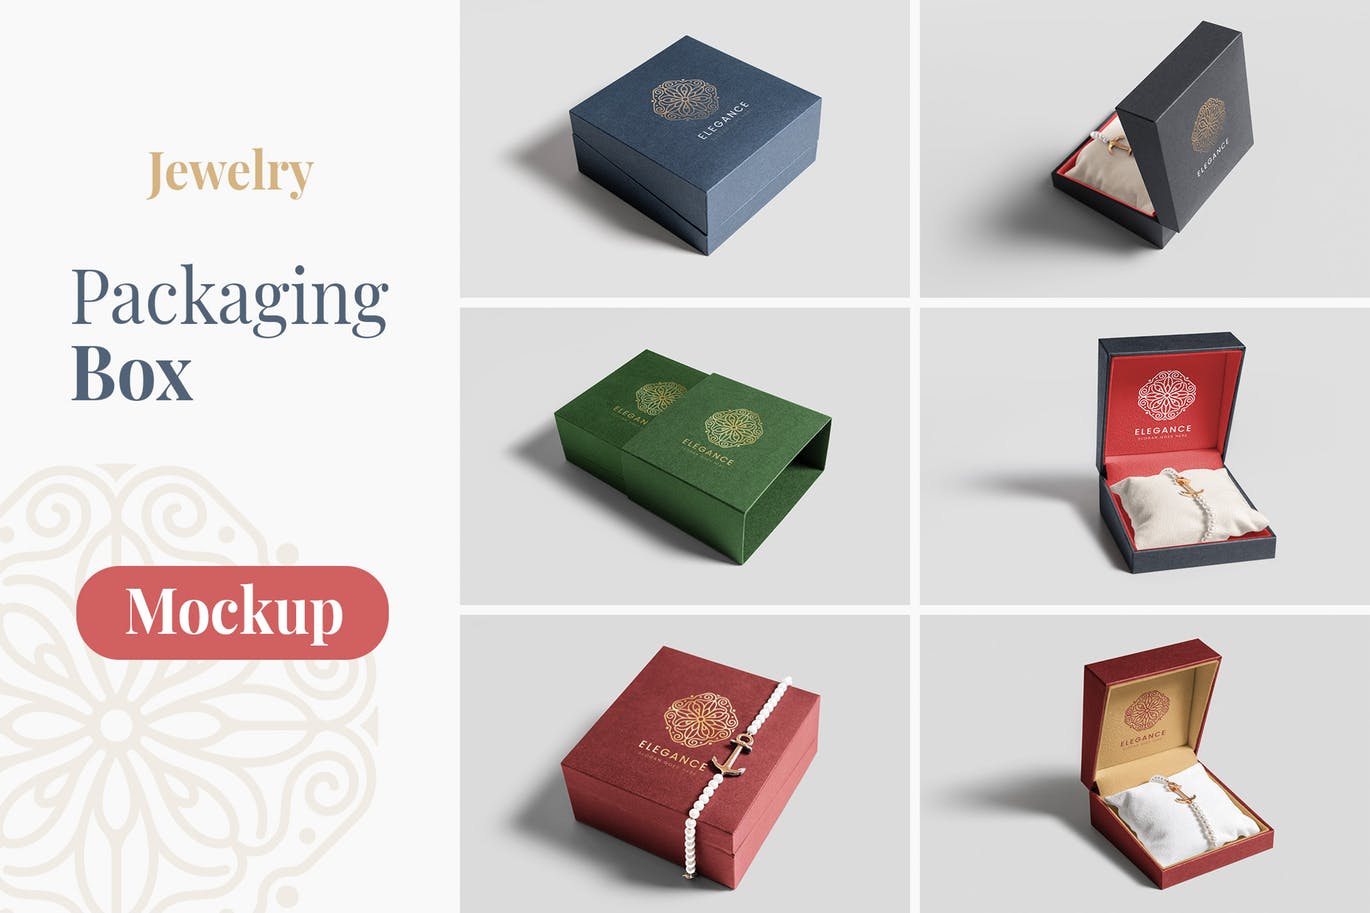 珠宝包装盒设计图第一素材精选模板 Jewelry Packaging Box Mockups插图